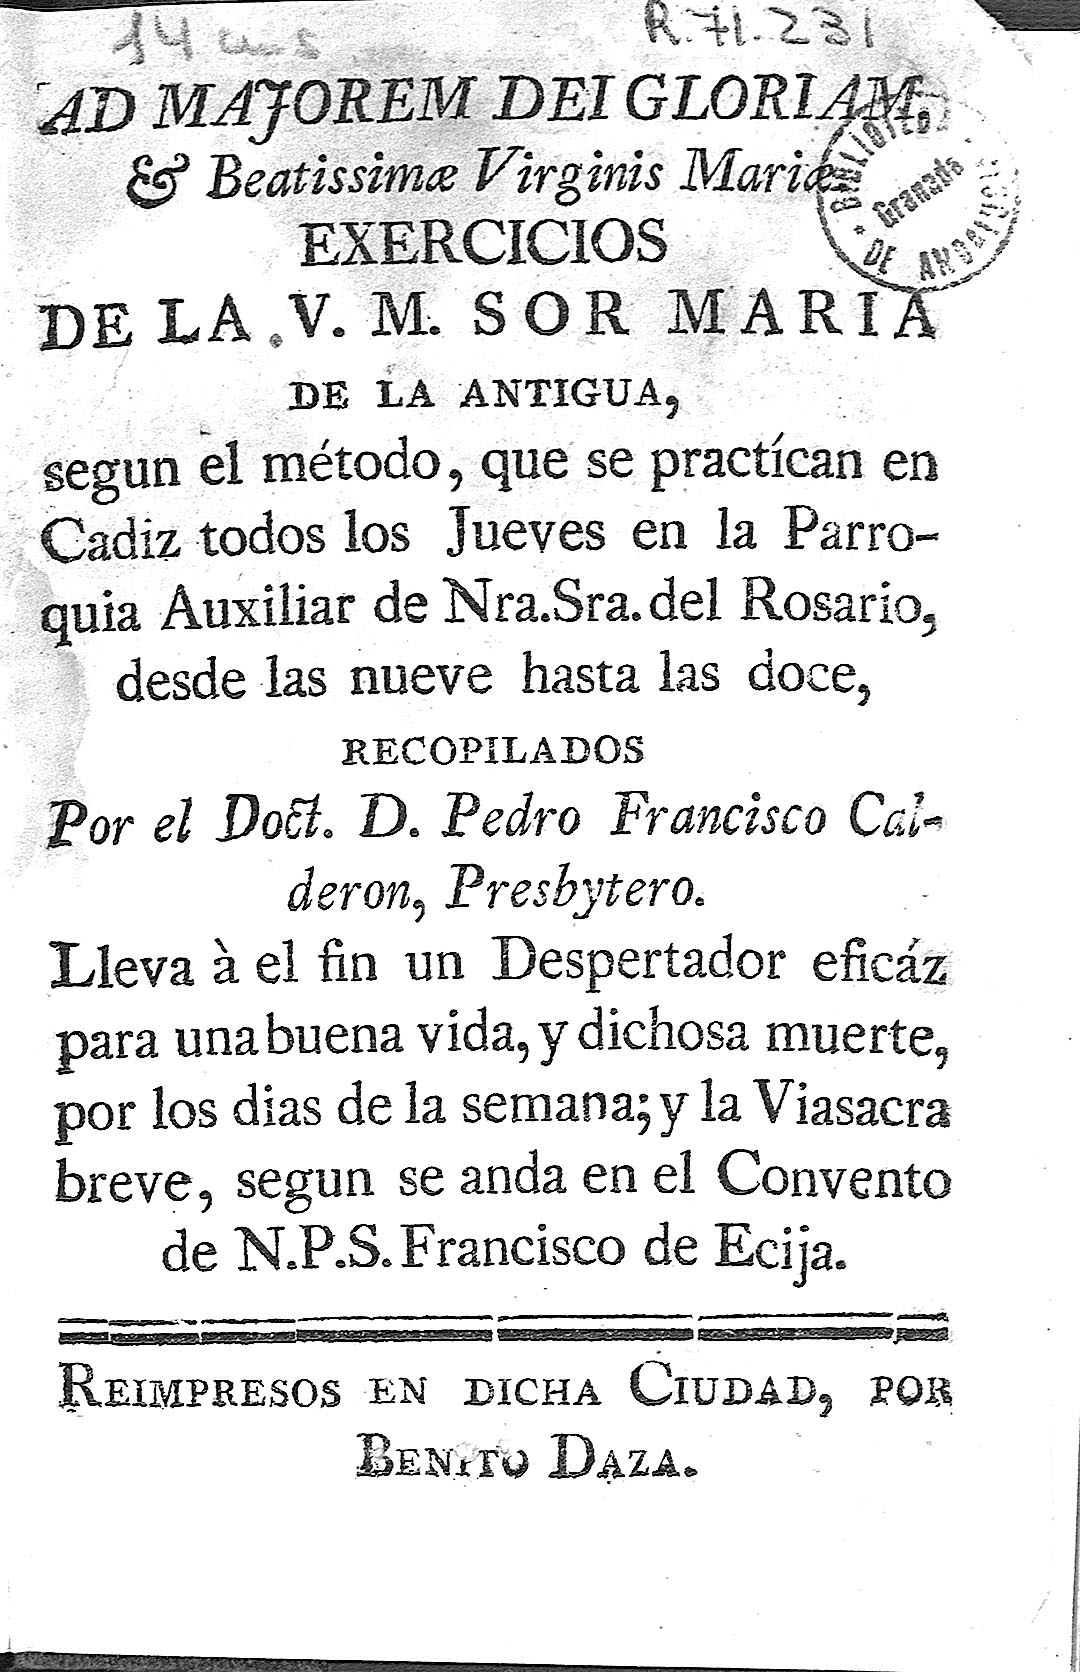 Exercicios de la V. M. Sor Maria de la Antigua, segun el método,...